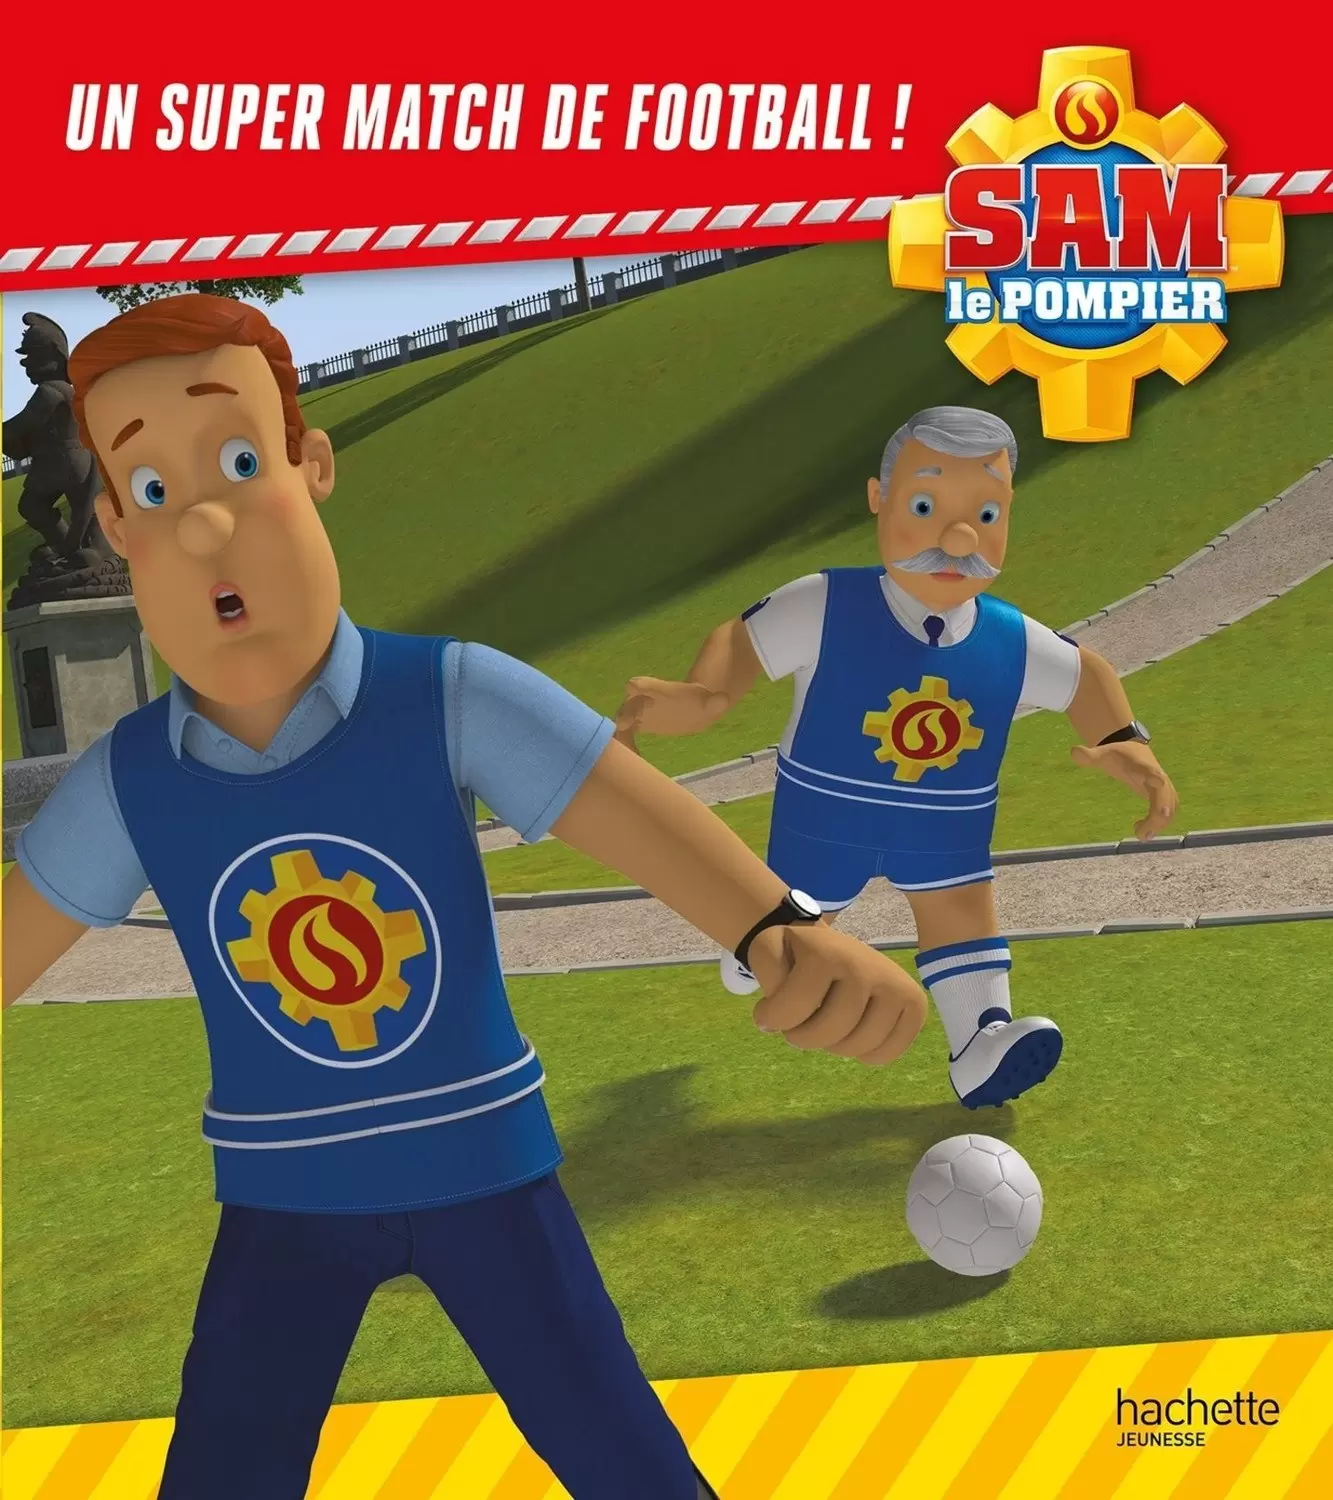 Sam le pompier - Un super match de football